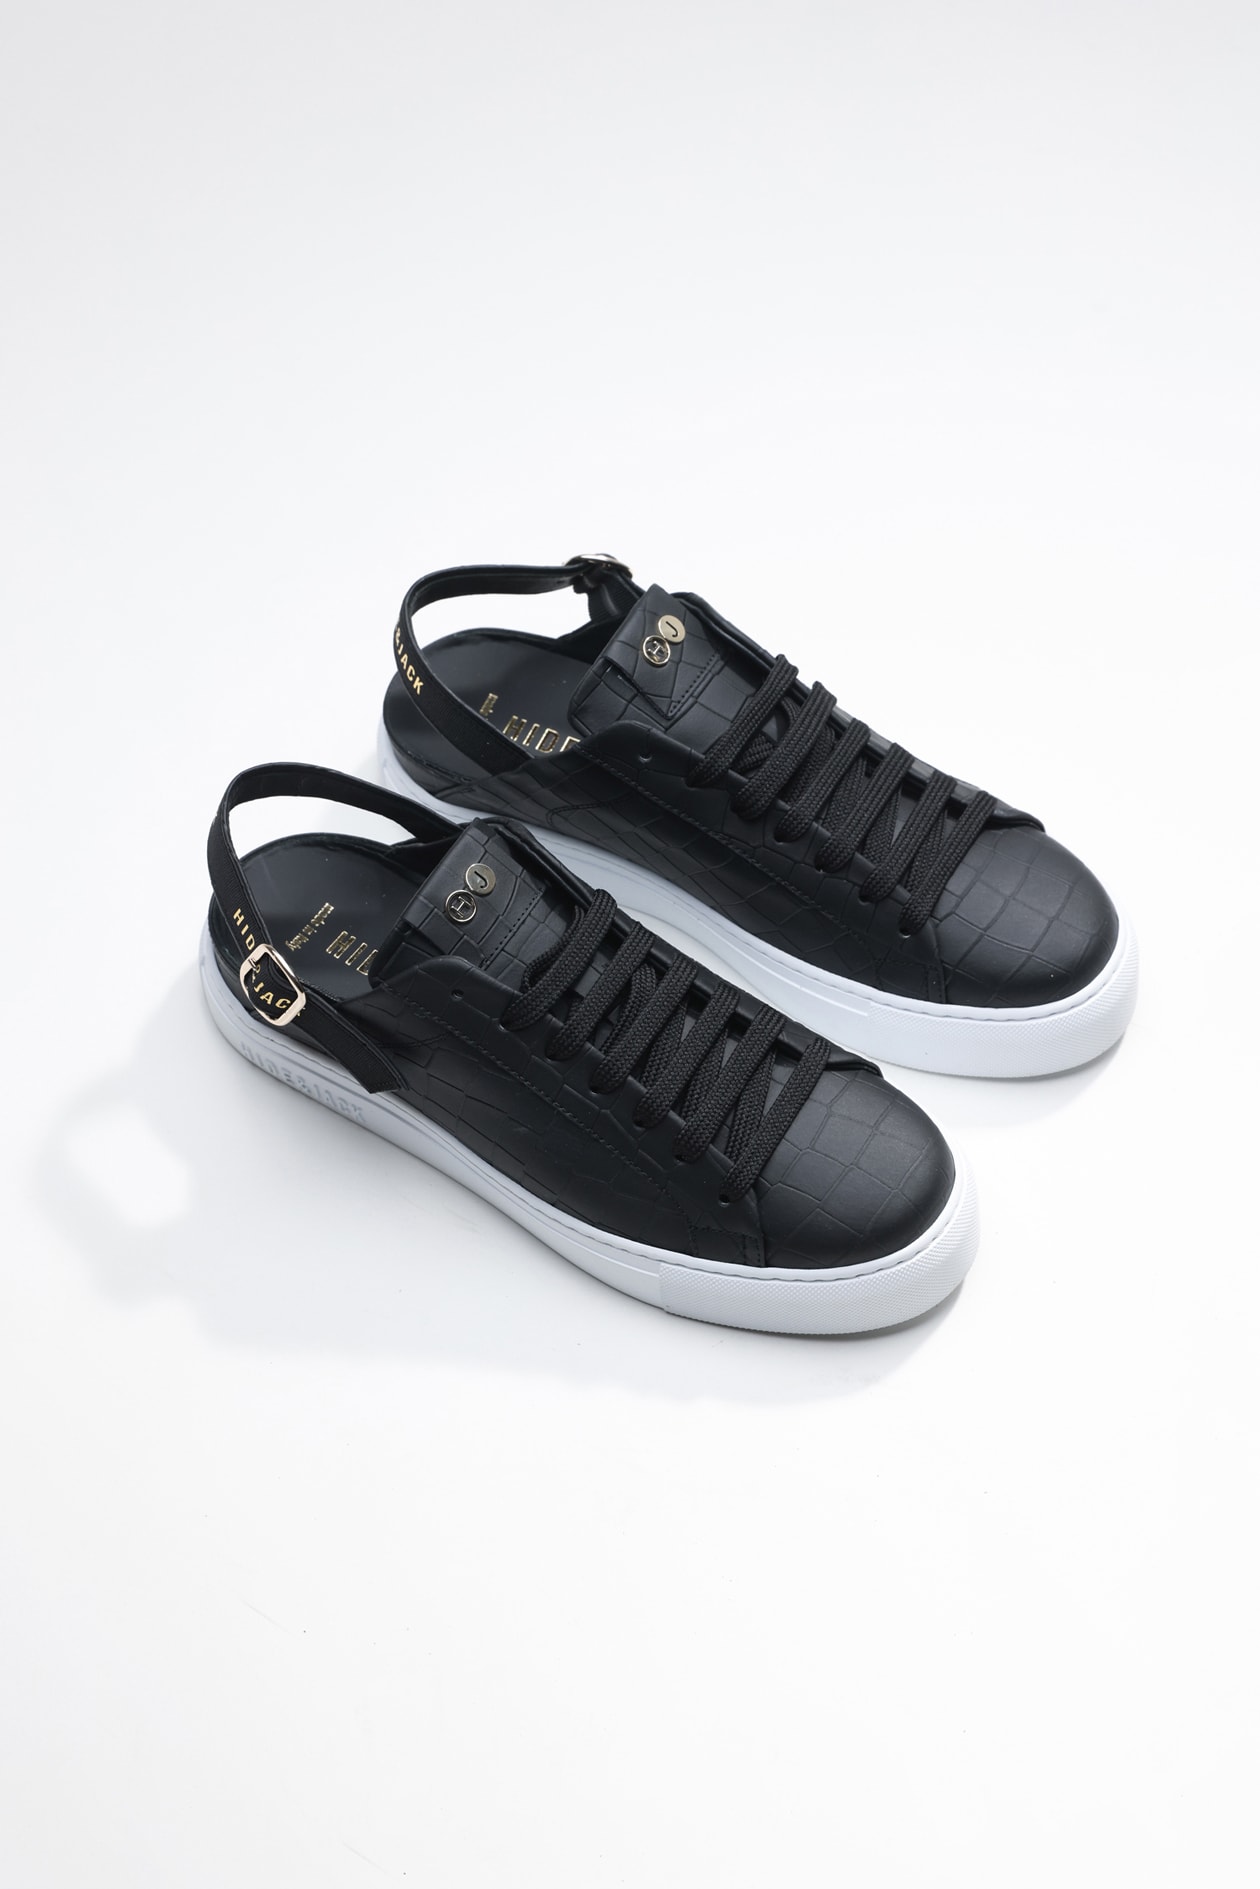 Hide & Jack Low Top Sneaker - Sabot Black